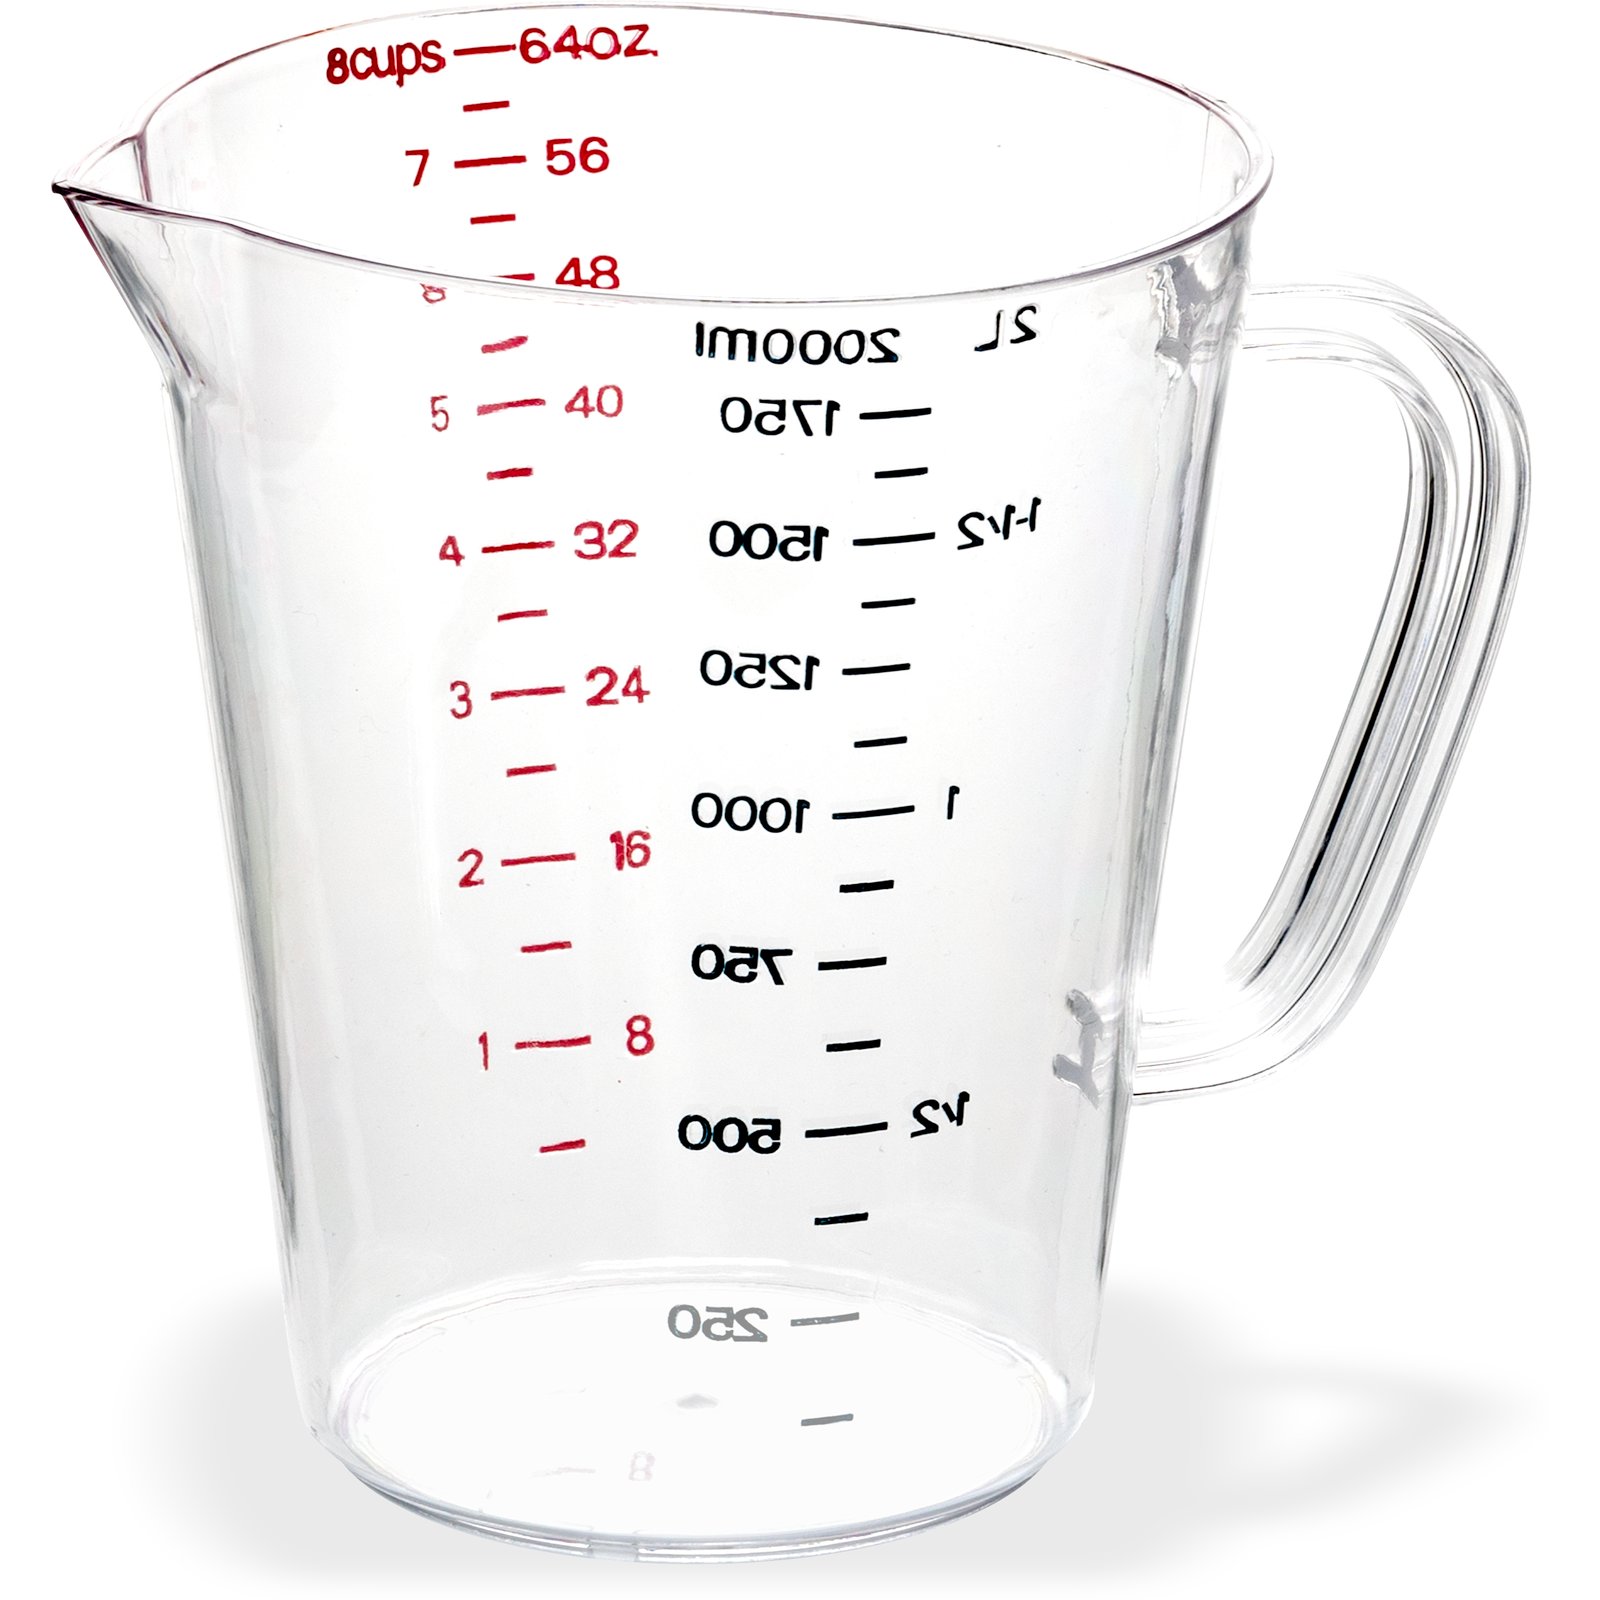 Flea Market Measuring Cup Set (1 Cup,1/2 Cup,1/3 Cup,1/4 Cup) by